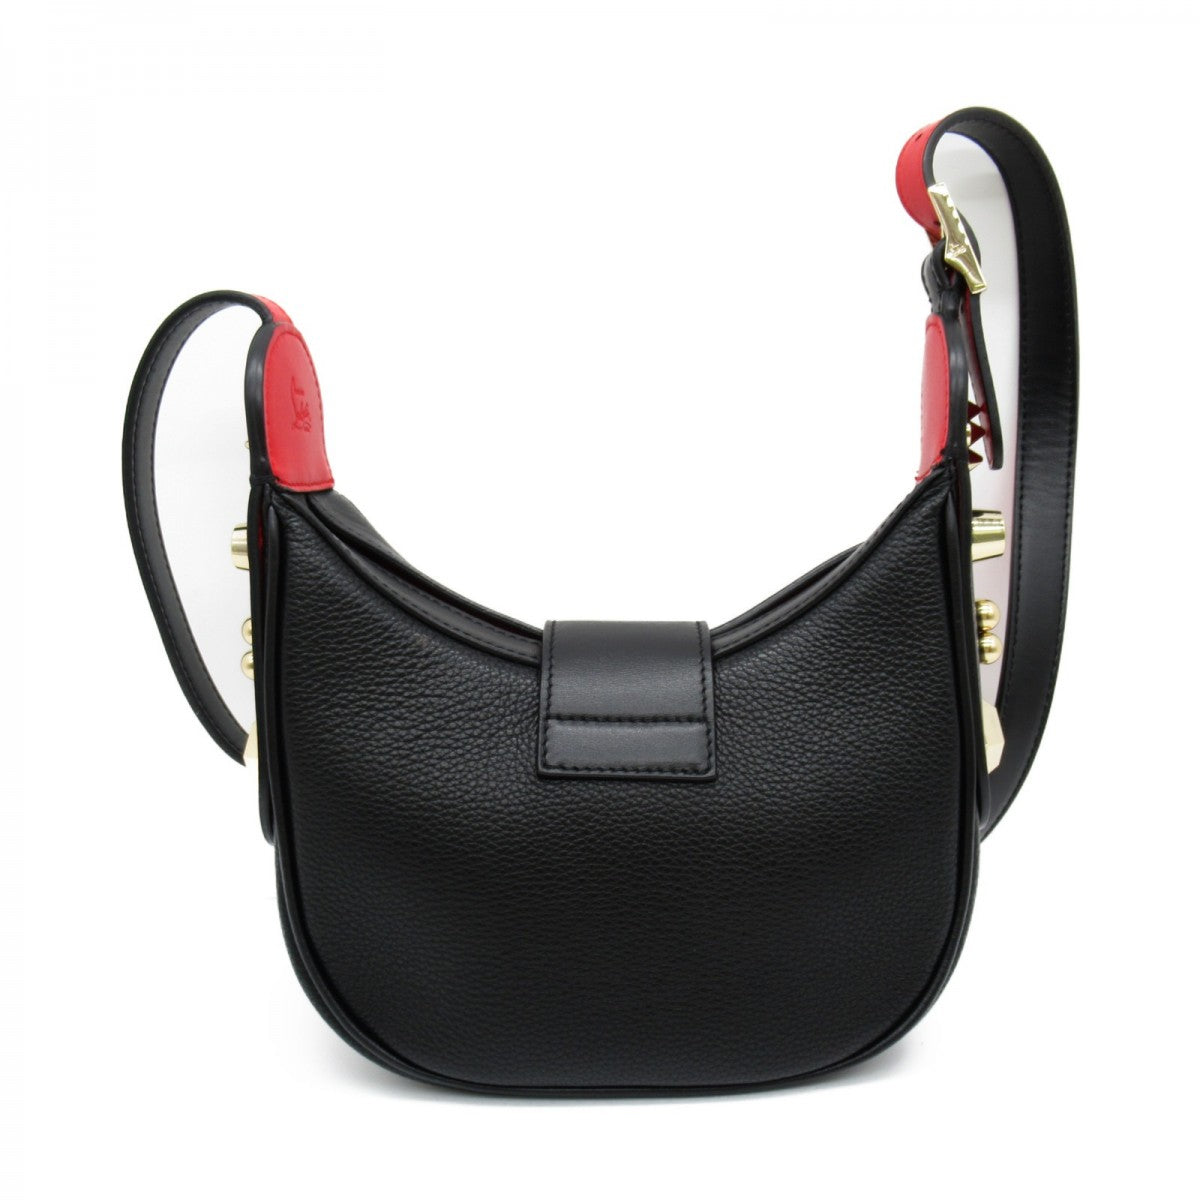 Carasky Leather Shoulder Bag 1225182